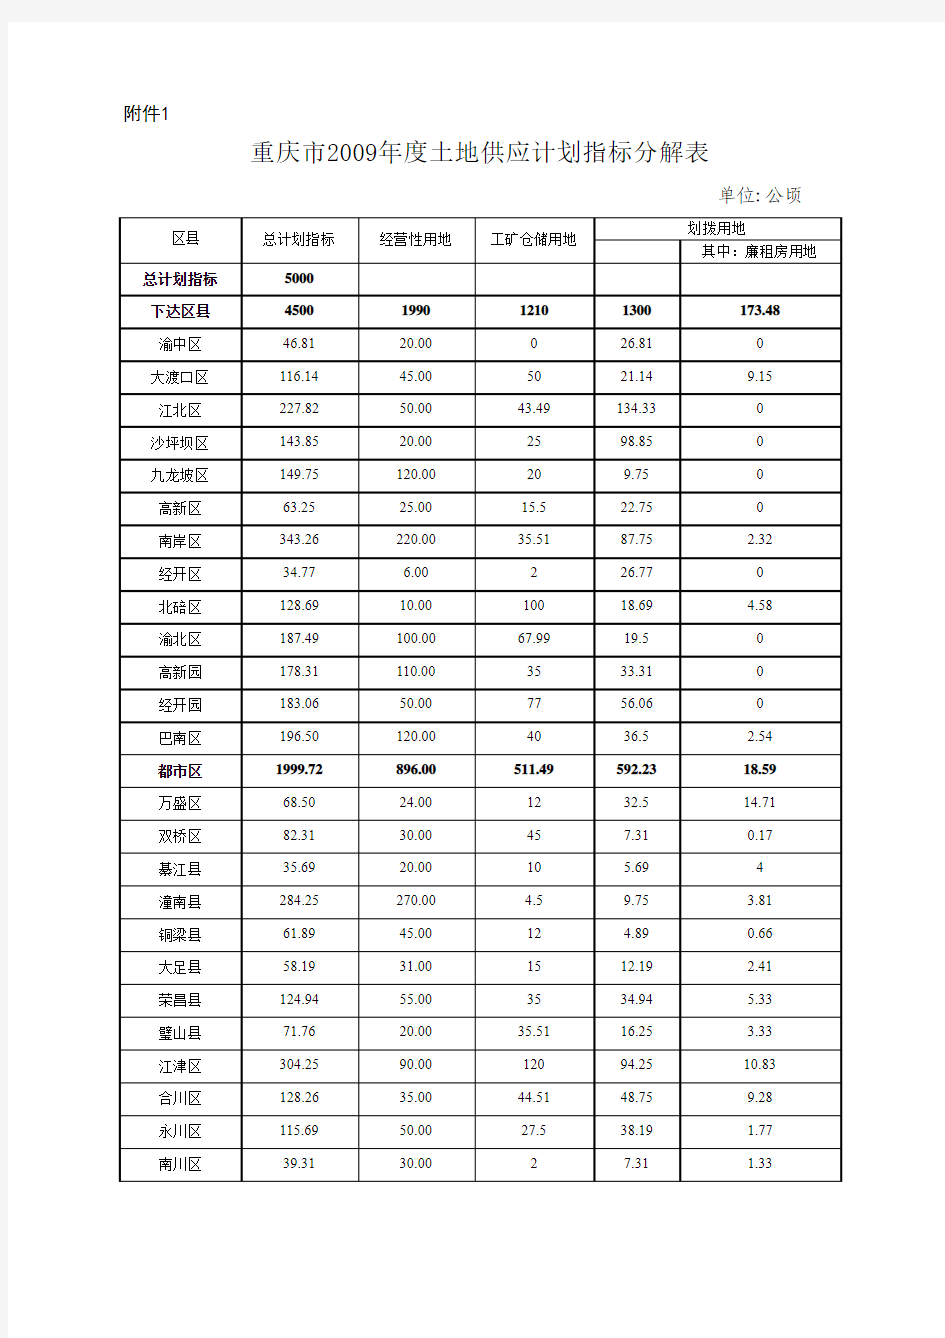 重庆市2009年度土地供应计划指标分解表